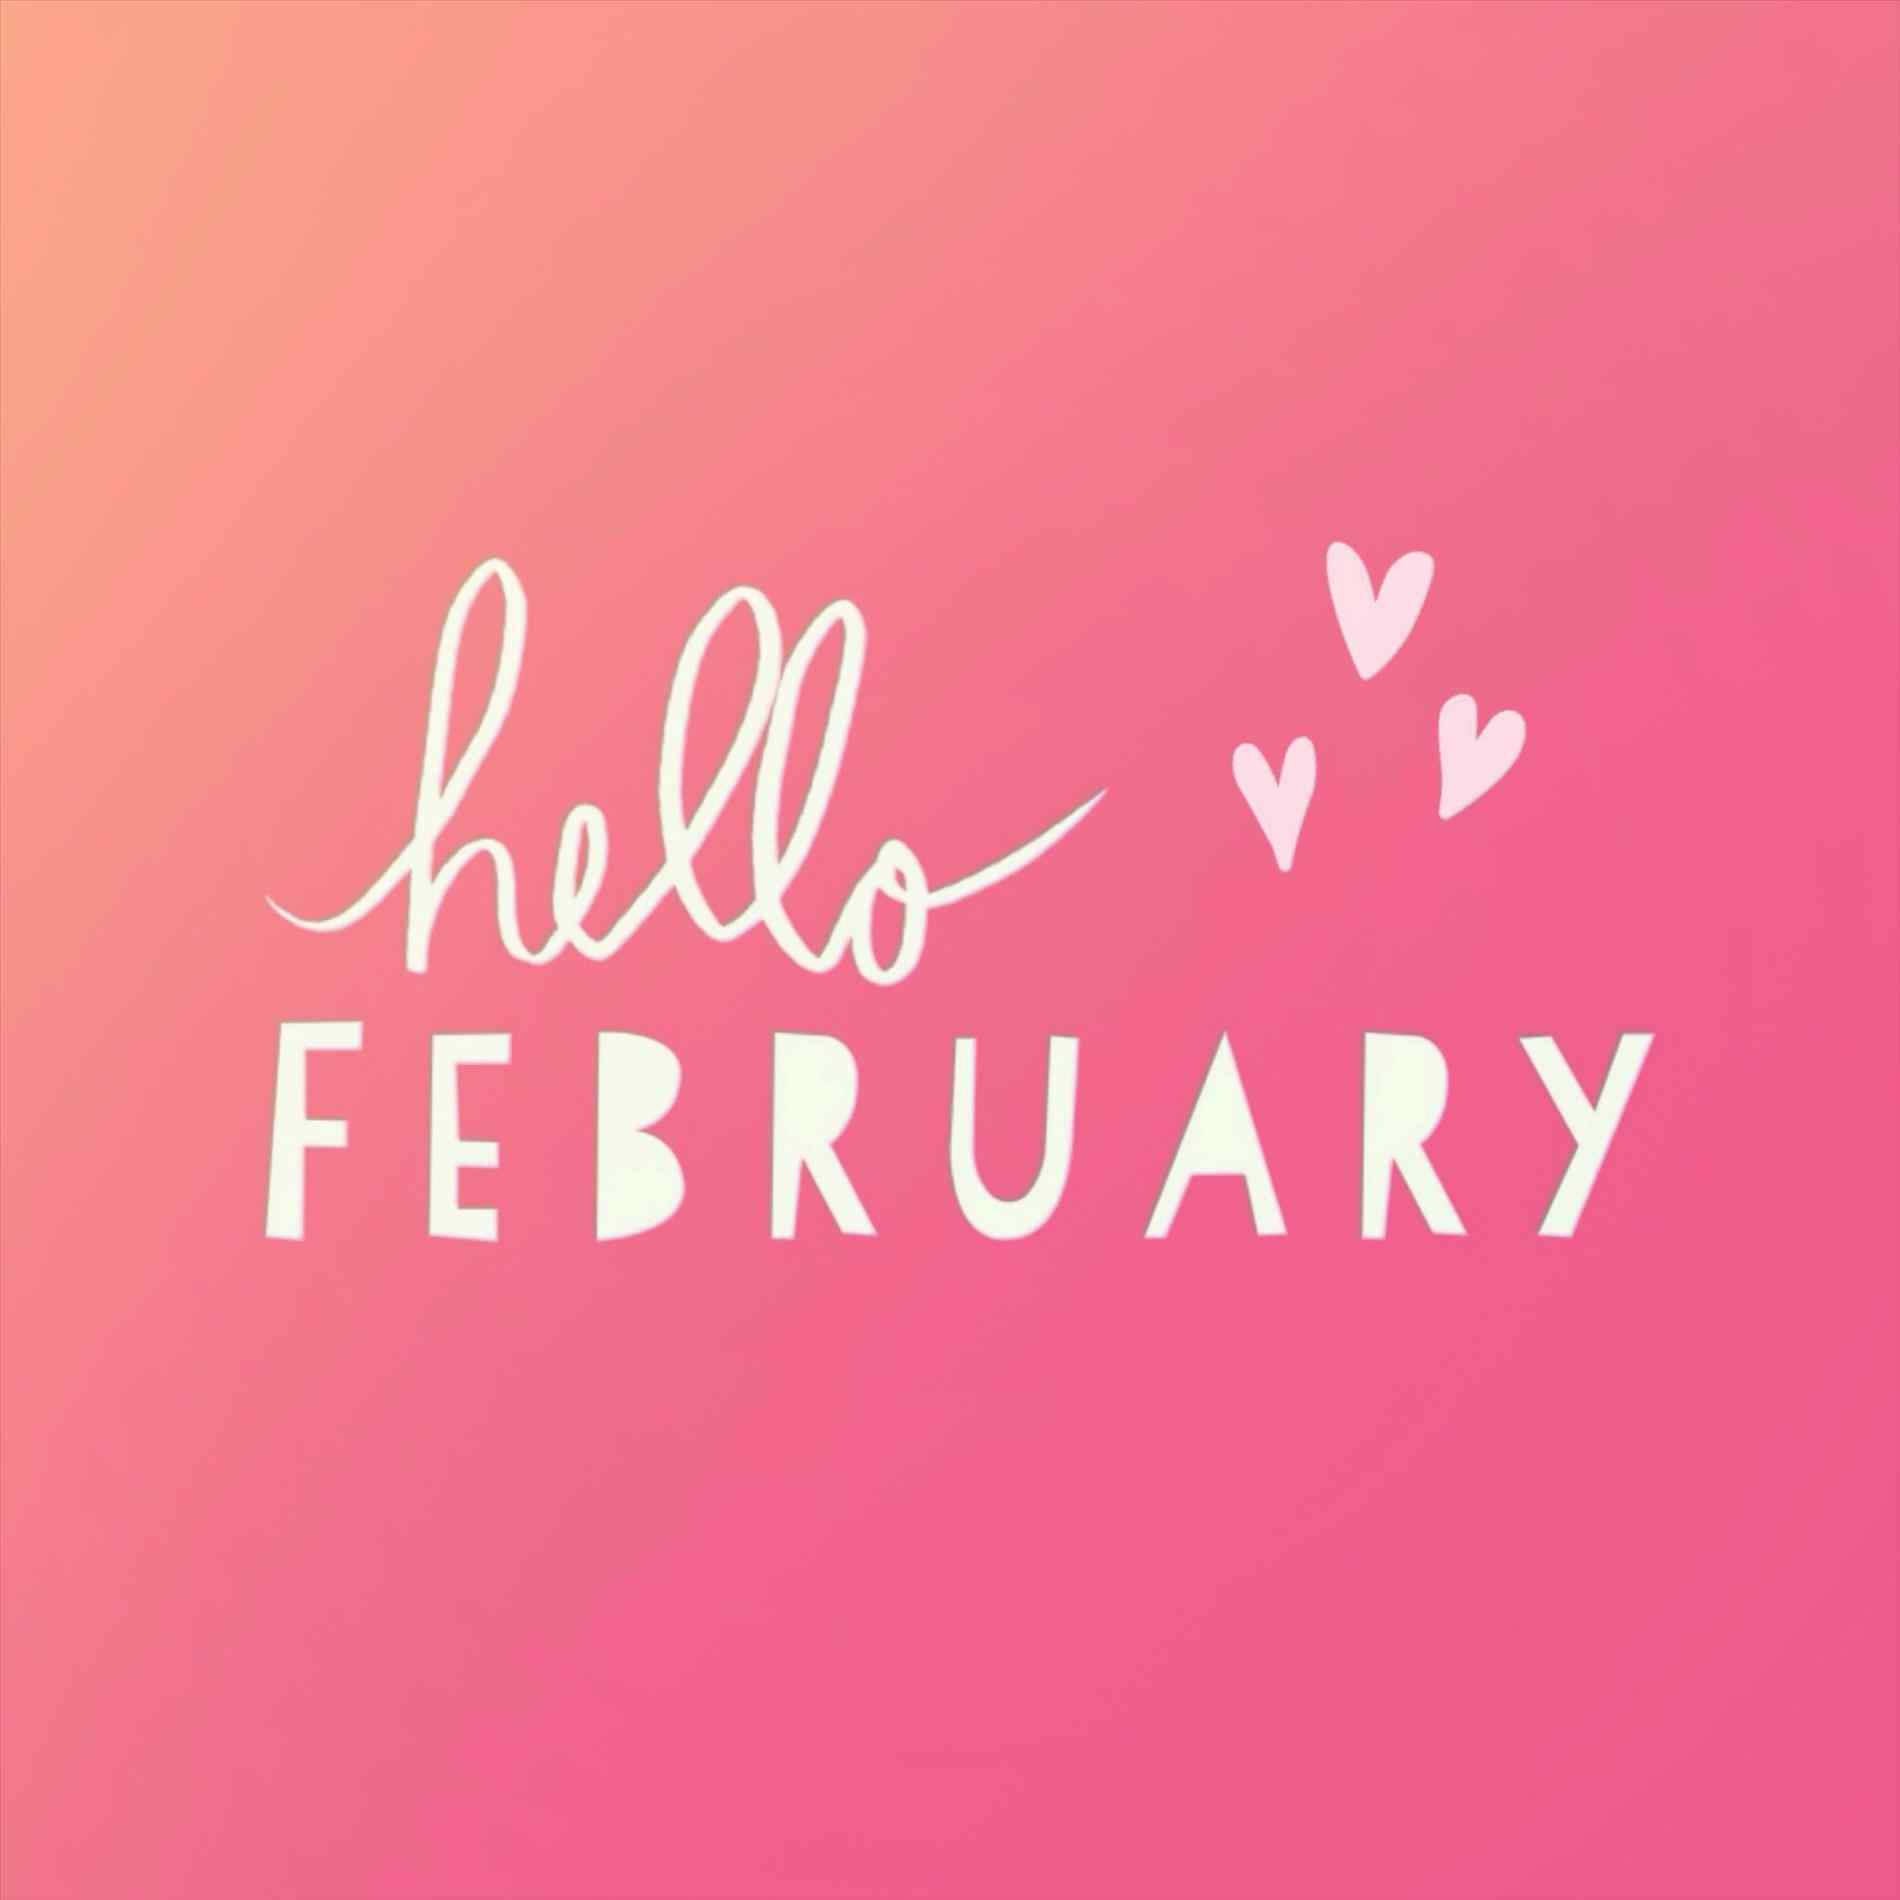 Goodbye January, Hello February!